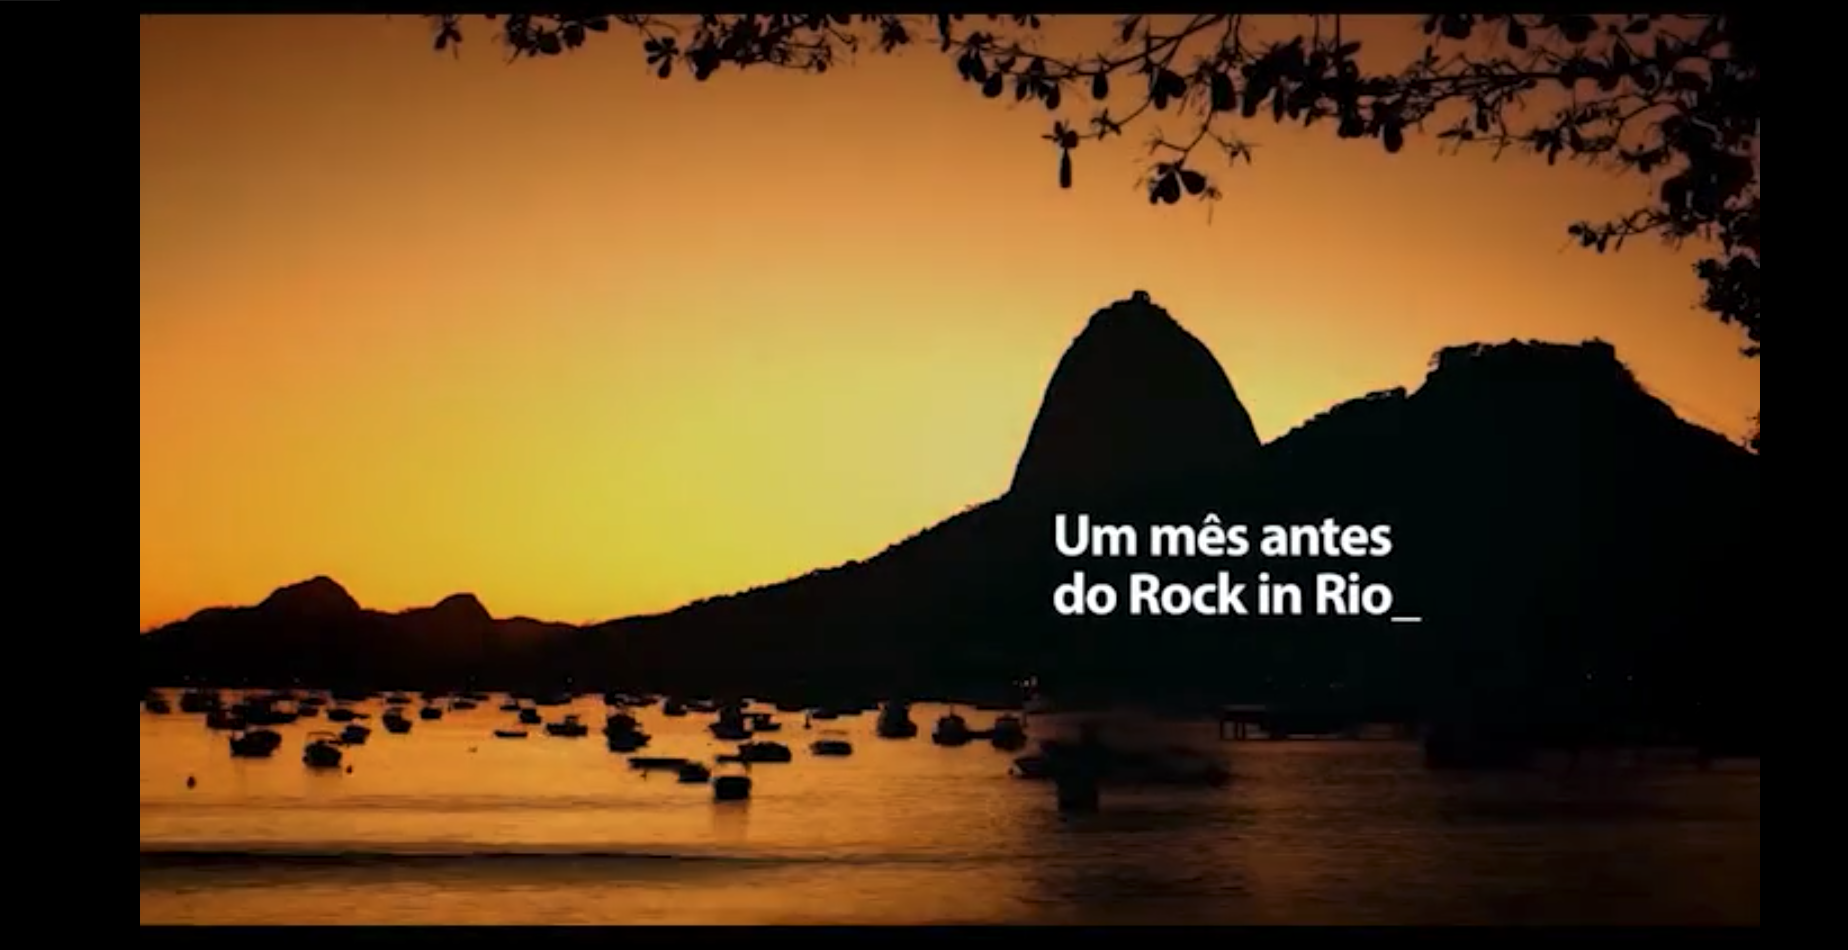 Campanha Itau Rock in Rio